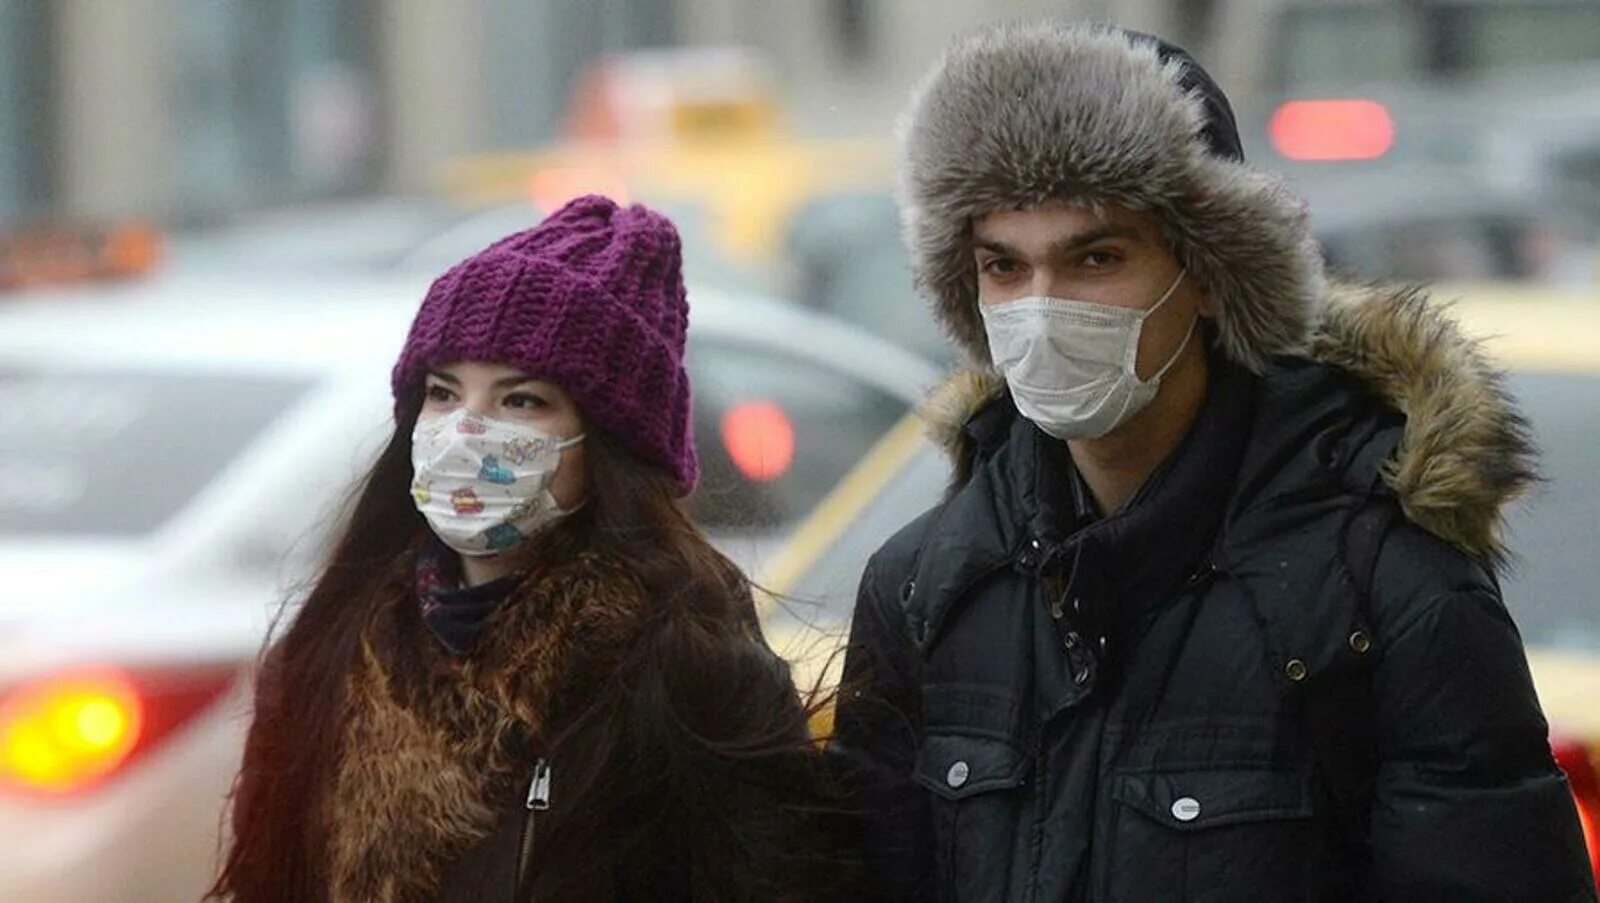 Люди в масках на улице. Люди в масках зима. Люди в масках на улице зимой. Люди в масках на улице зима. Почему нара ходит в маске